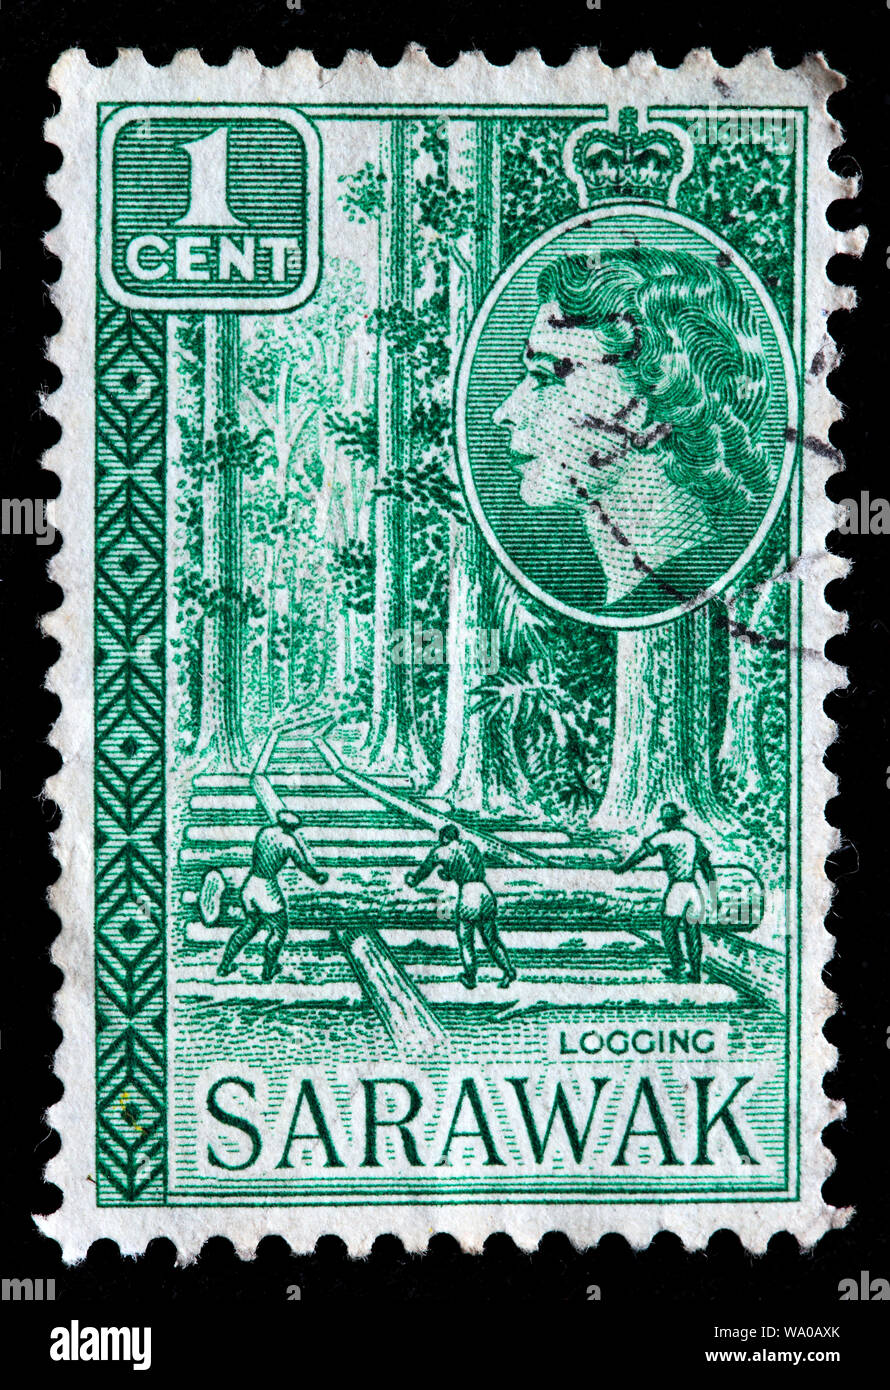 L'exploitation forestière, timbre-poste, Sarawak, 1957 Banque D'Images